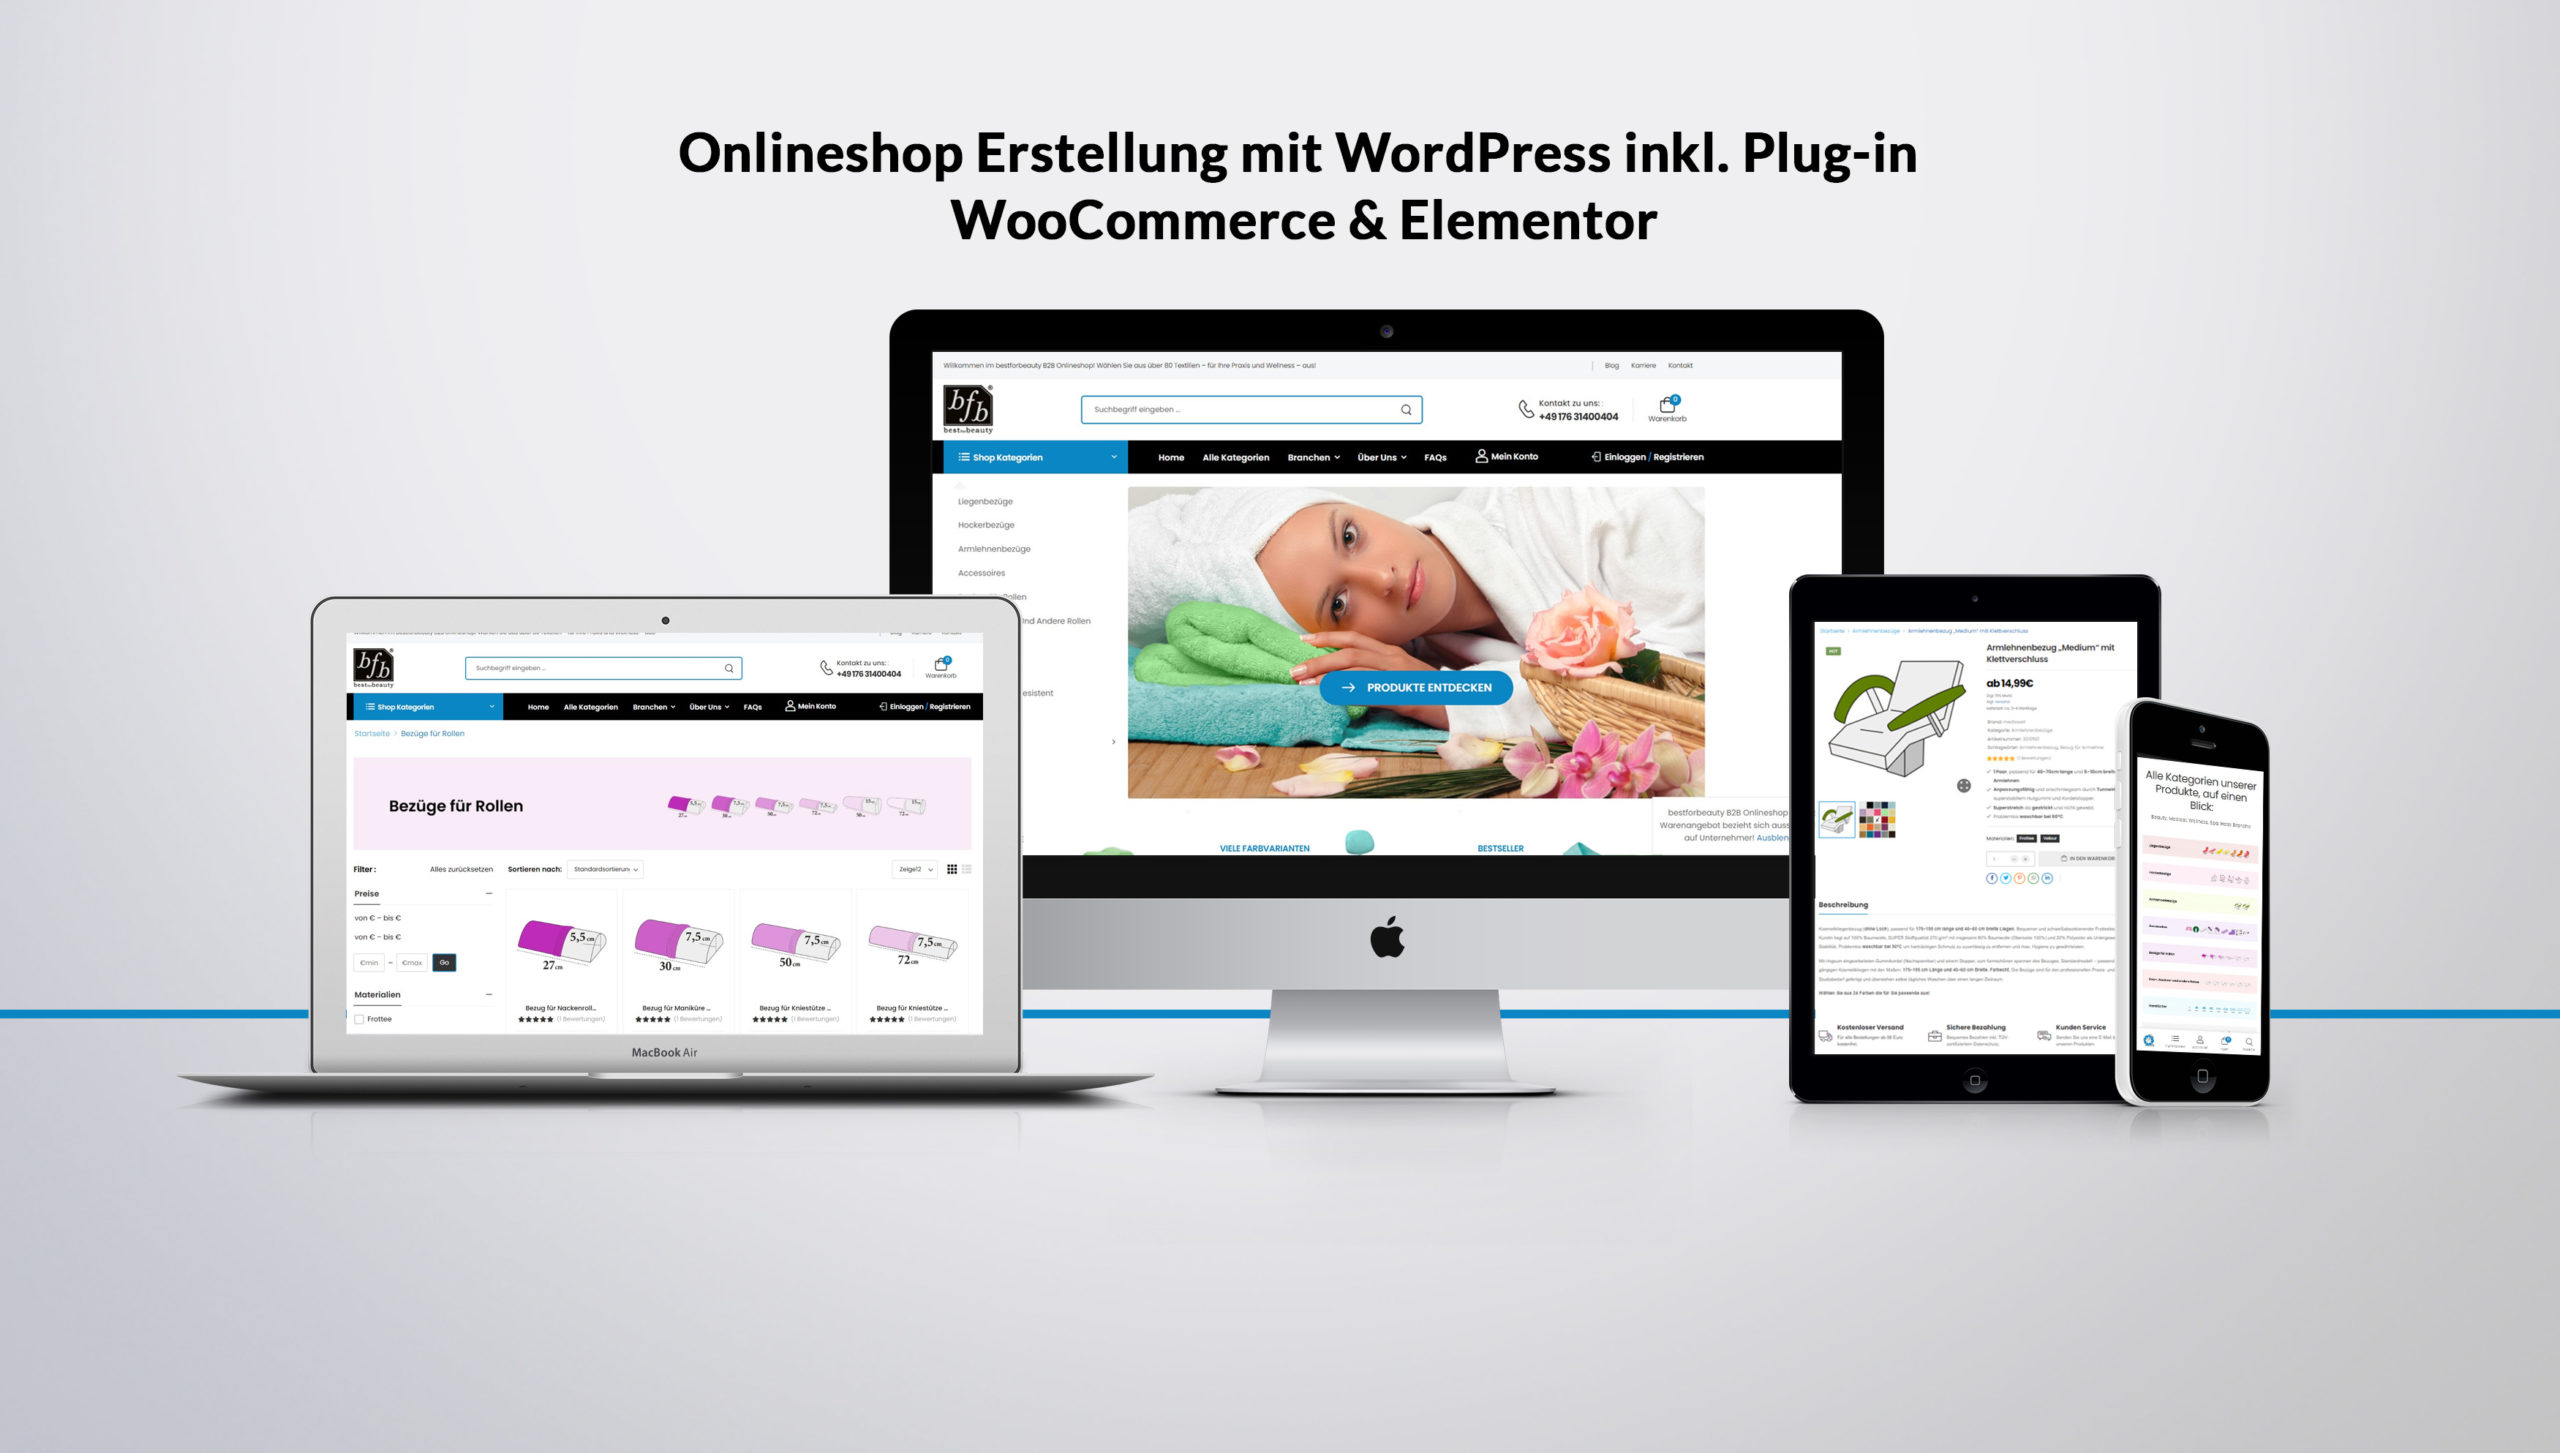 Onlineshop erstellung mit WordPress inkl. Plug-in WooCommerce & Elementor